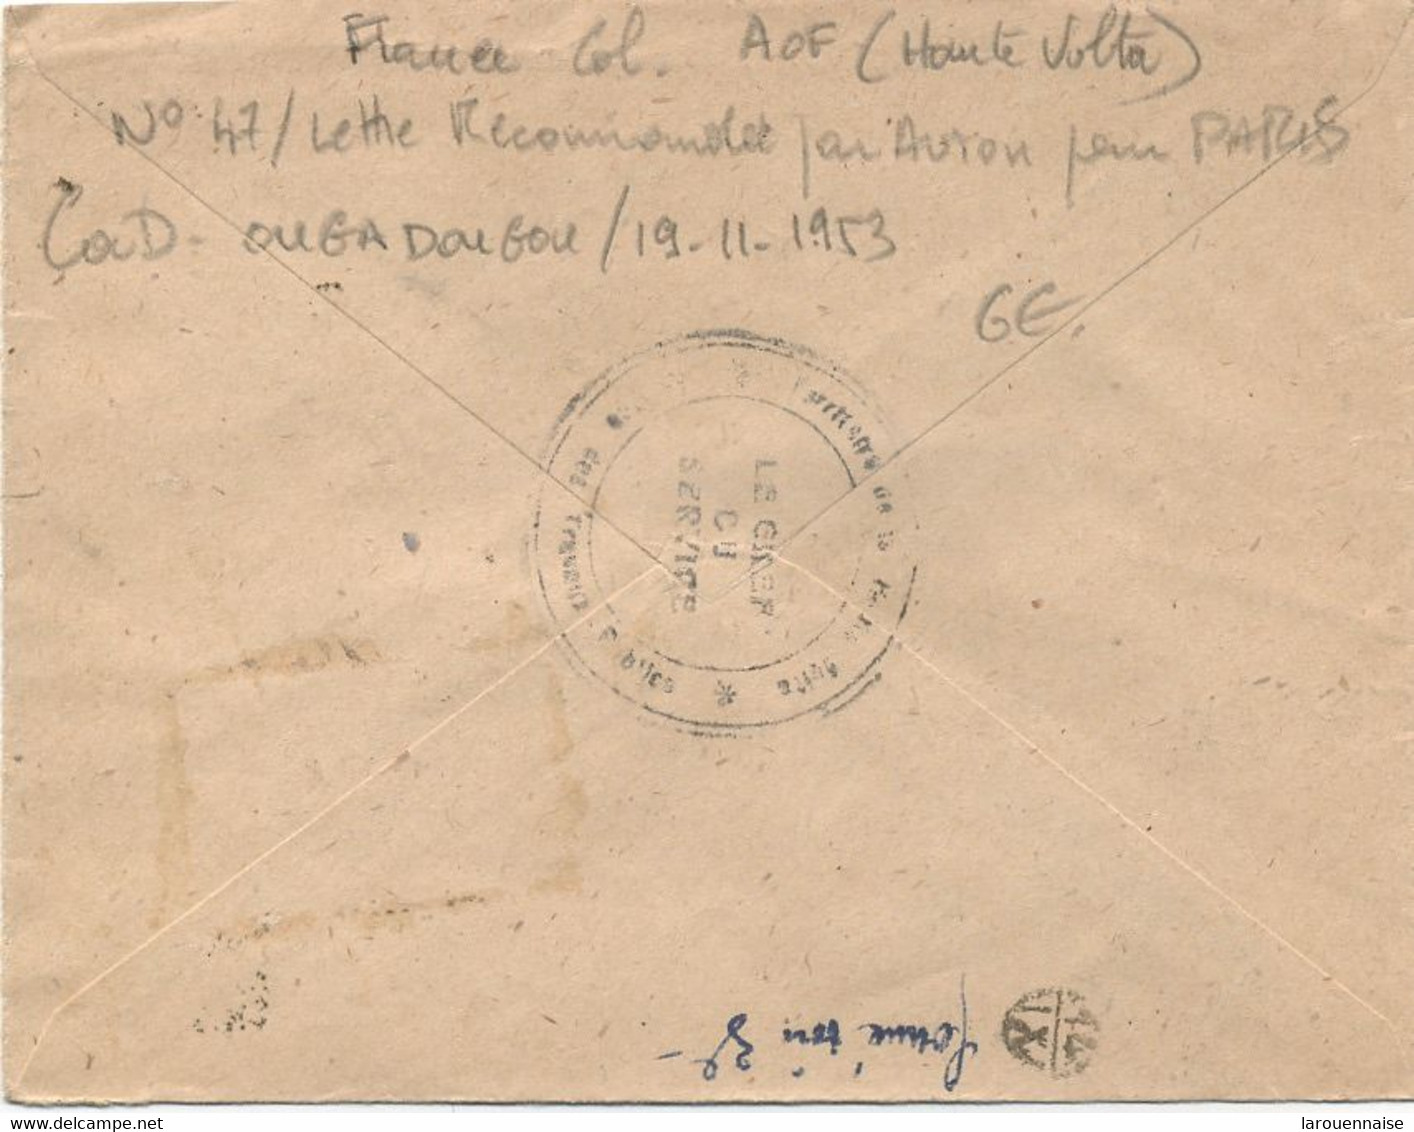 AOF  - HAUTE VOLTA  -N°47 / LETTRE RECOMMANDEE Par AVION Pour PARIS  -C à D OUGADOUGOU / 19 -11-1953 - Briefe U. Dokumente